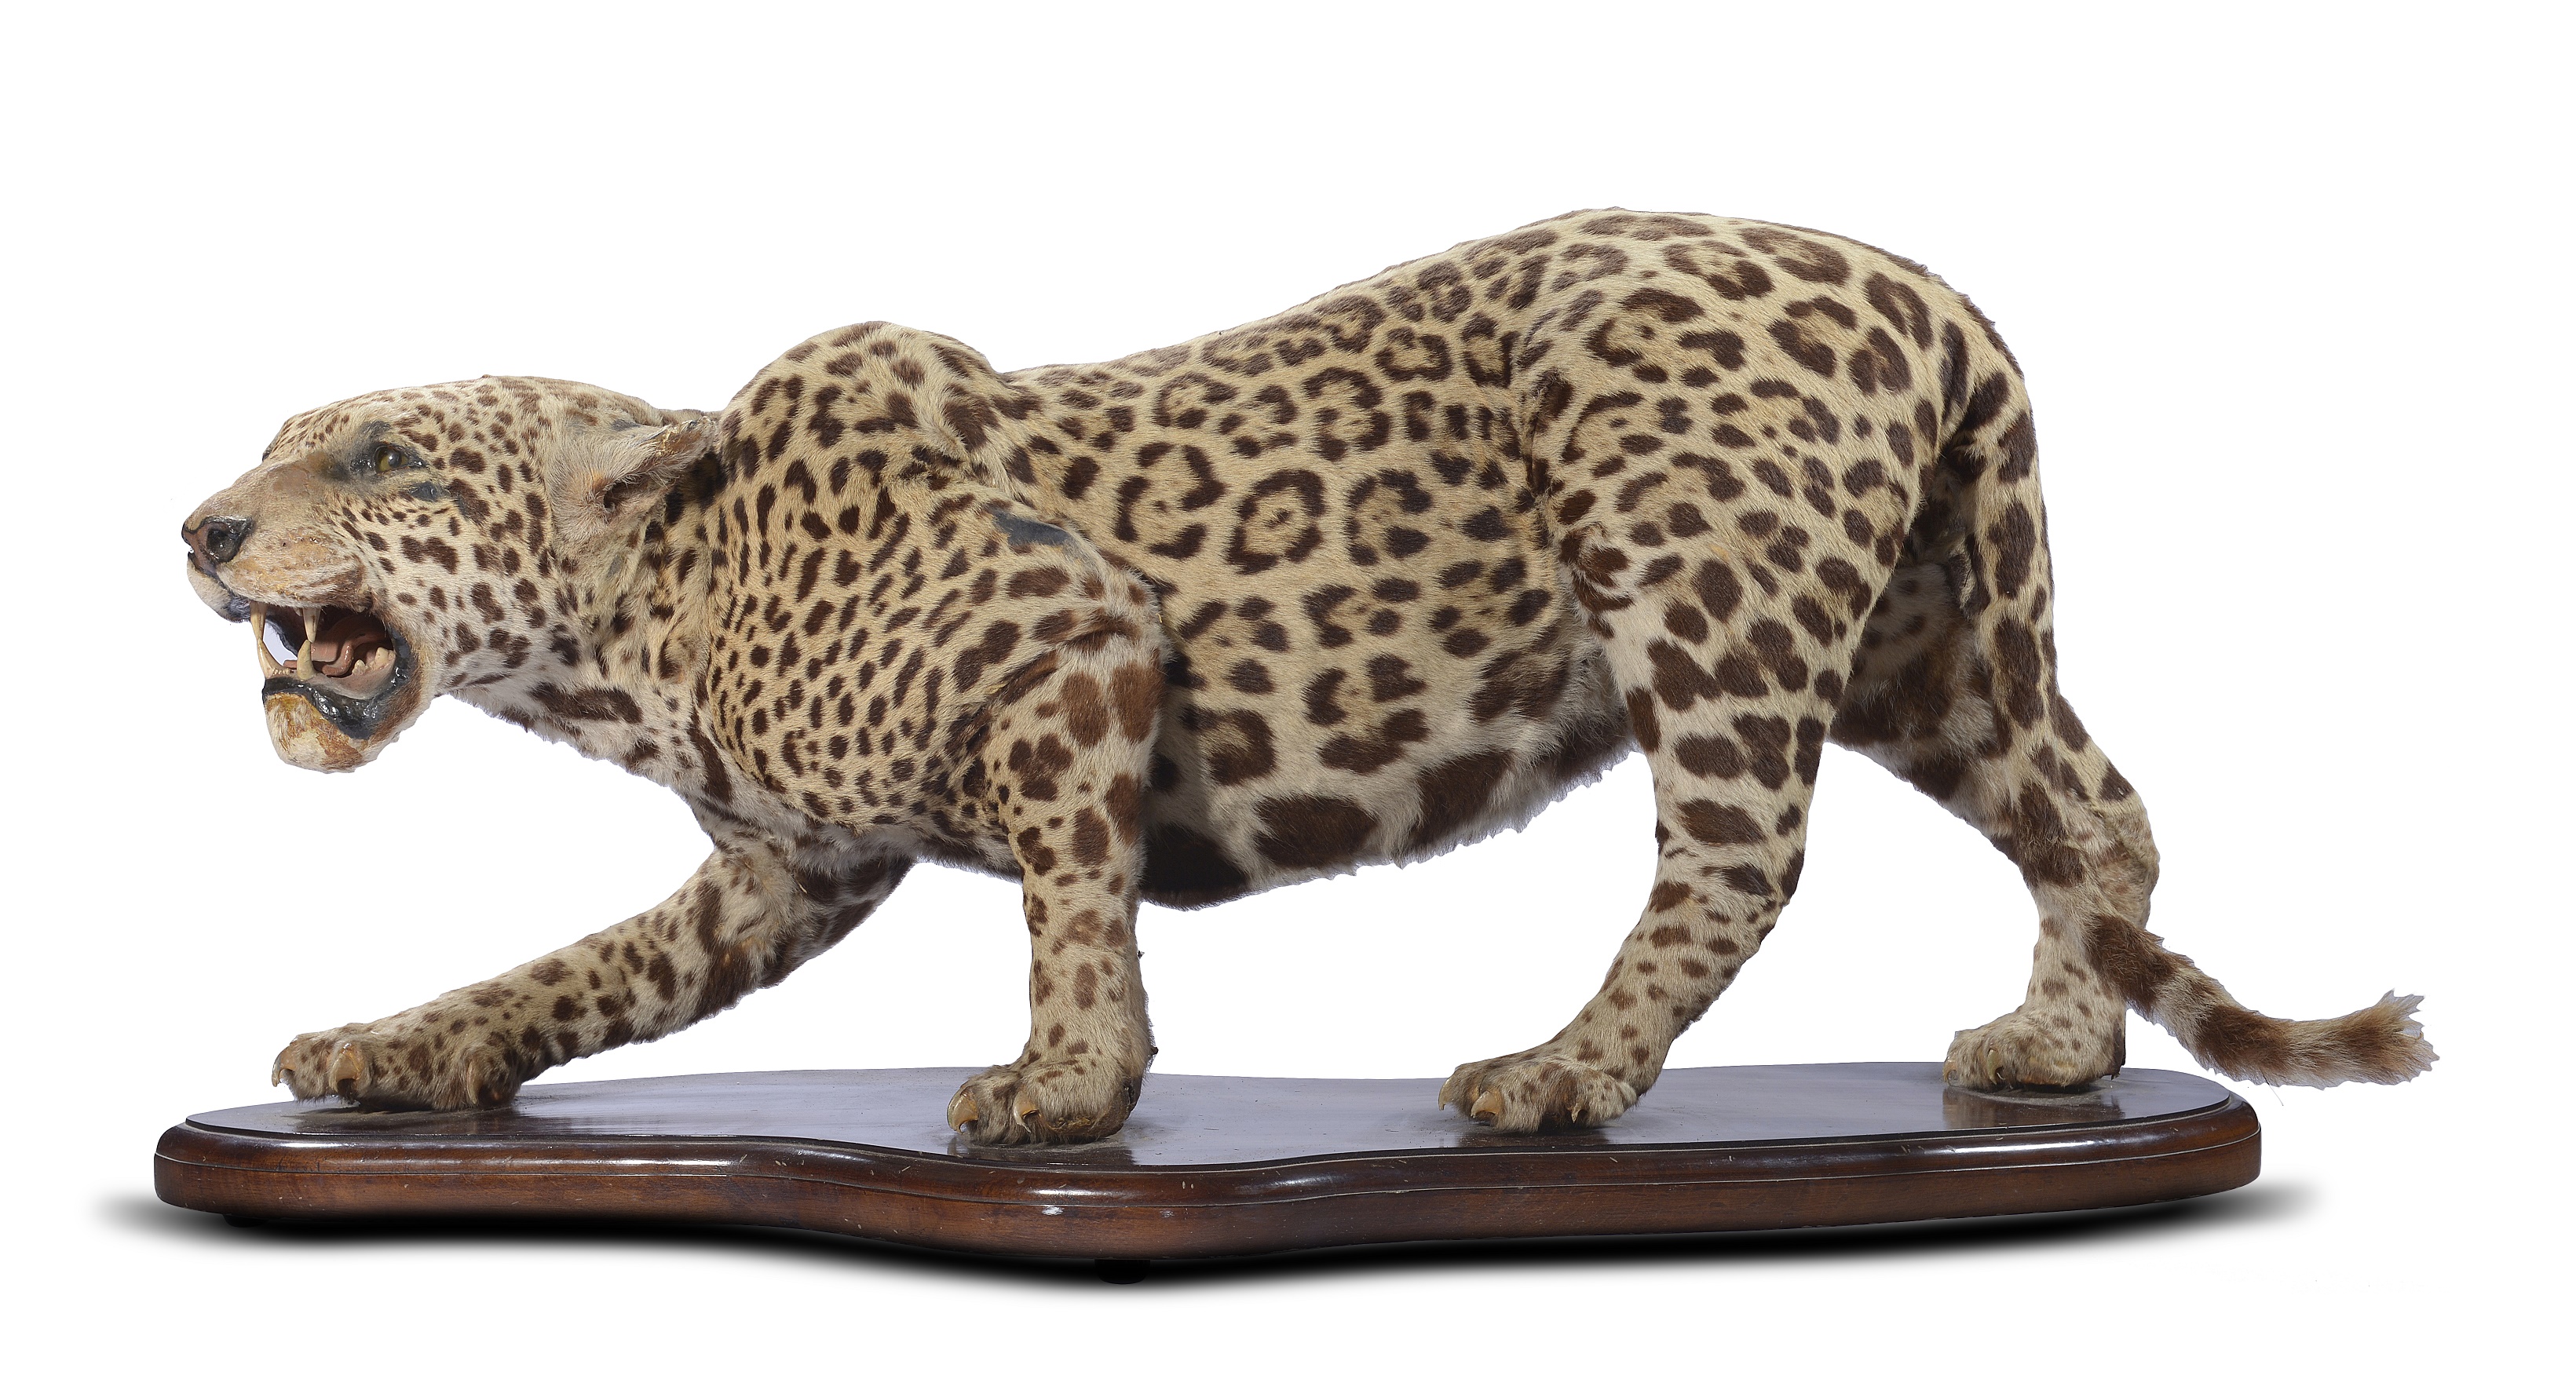 A taxidermy jaguar